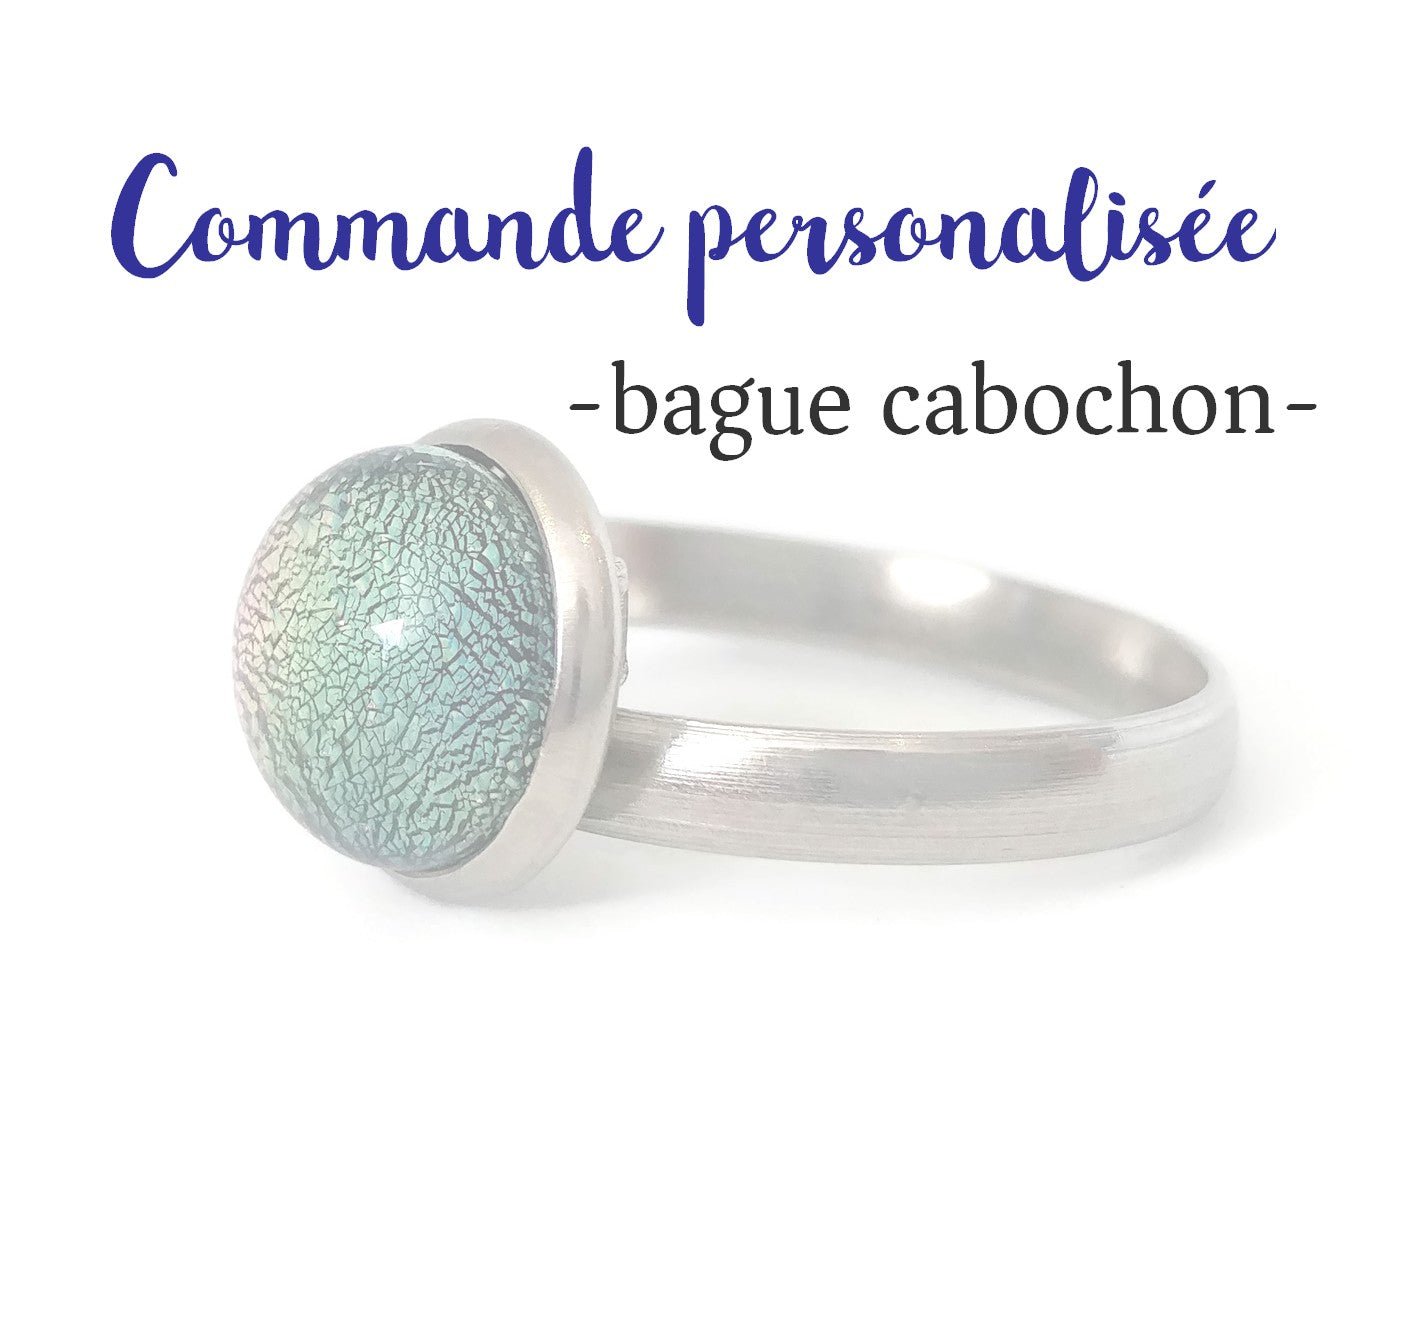 Bague cabochon-commande personnalisée - Bijoux Le fil d'Ariane